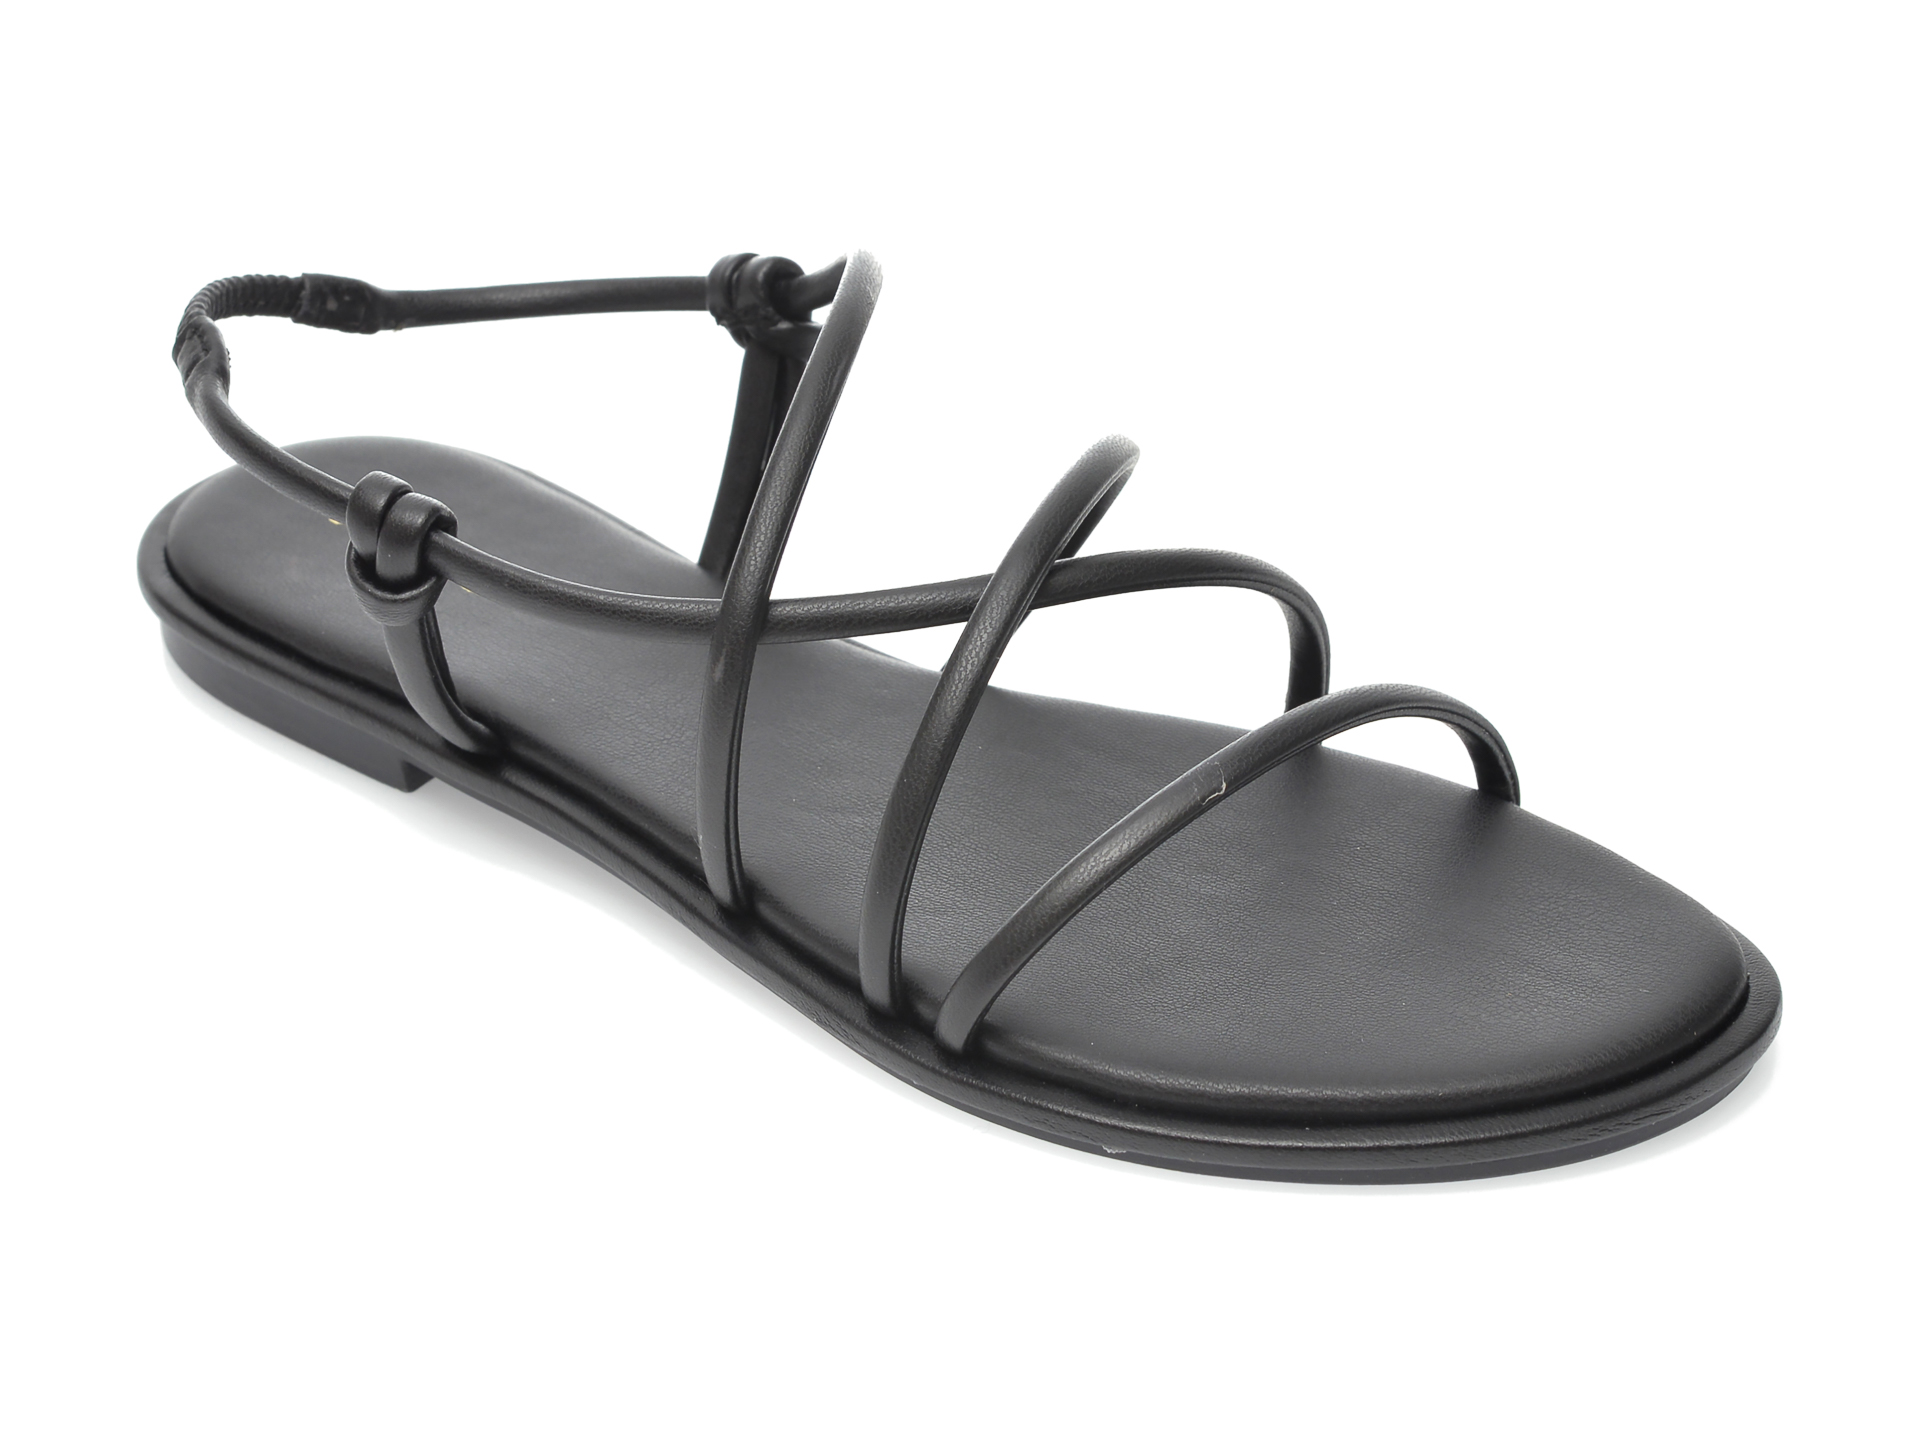 Sandale ALDO negre, Kuerten001, din piele ecologica imagine otter.ro